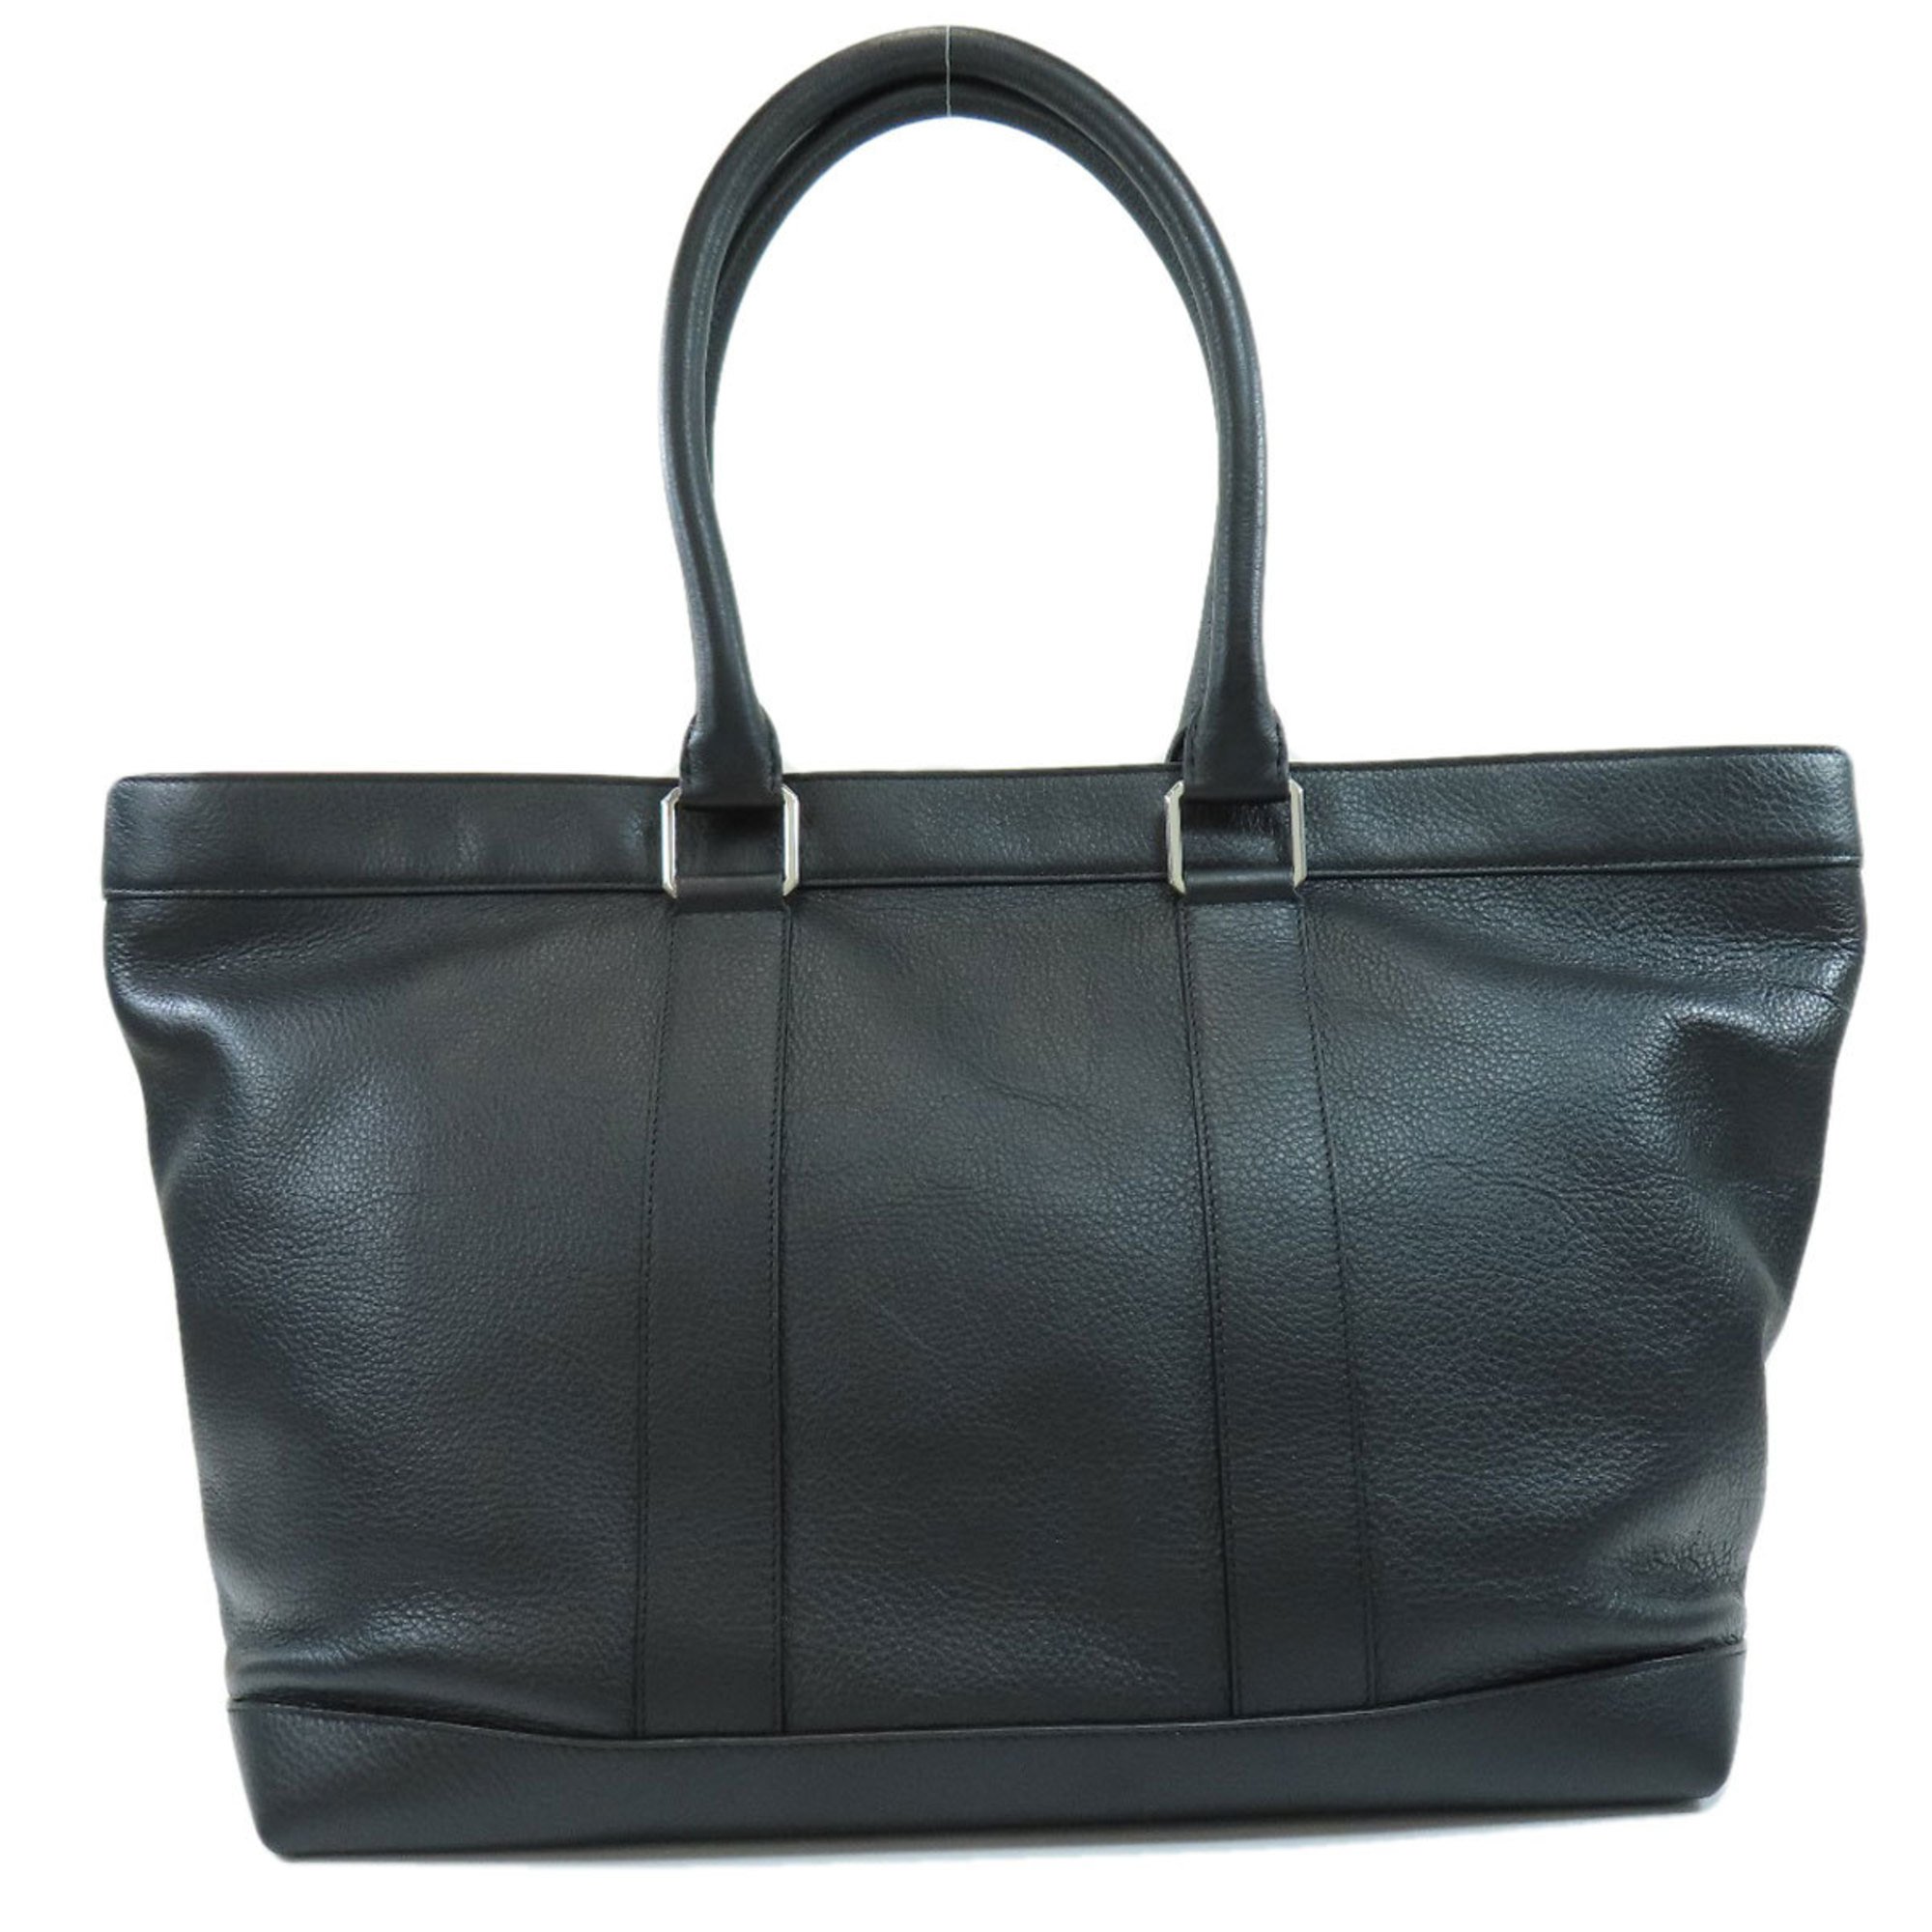 Bottega Veneta Design Tote Bag Leather Women's BOTTEGA VENETA